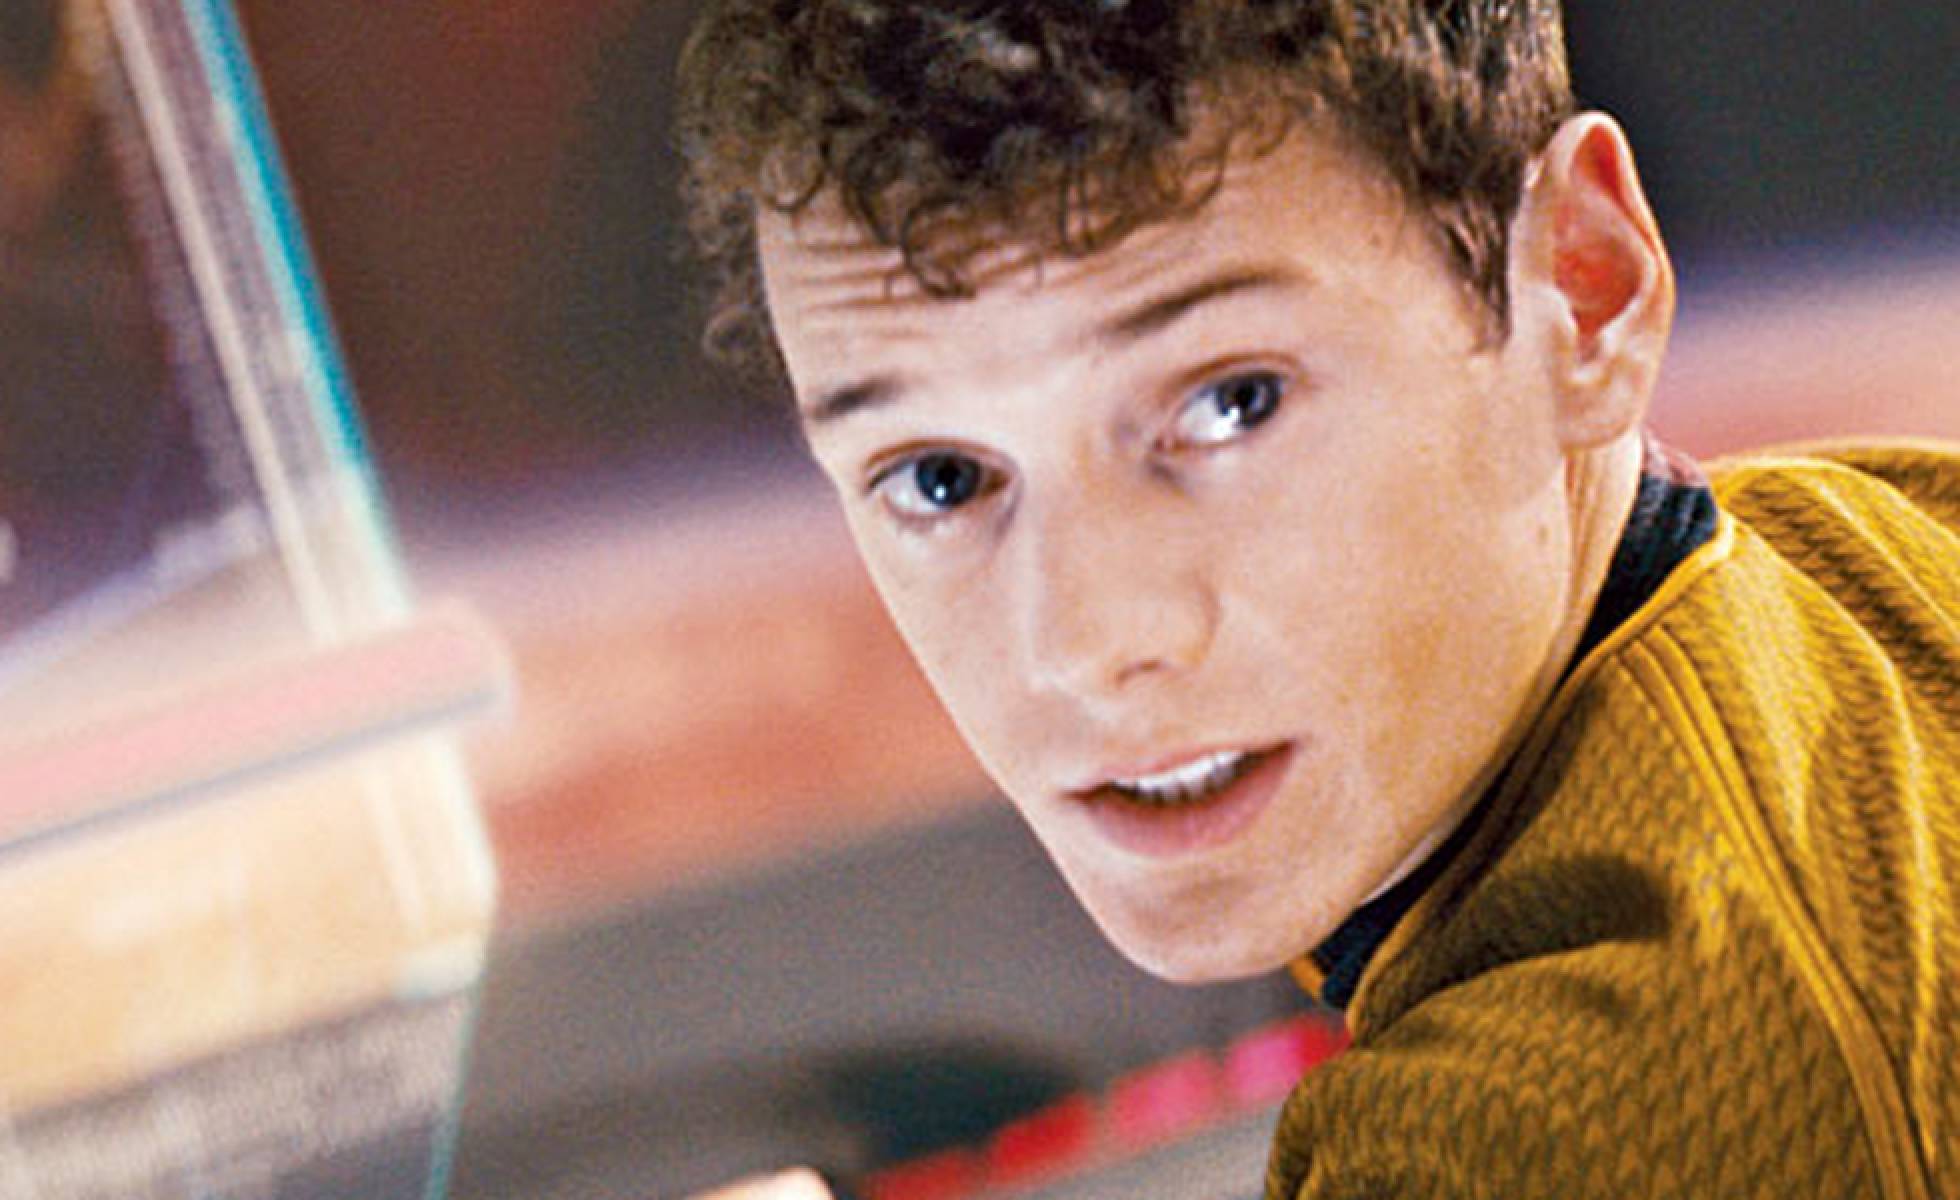 Falleció el actor de 'Star Trek' Anton Yelchin a los 27 años, en extraño accidente